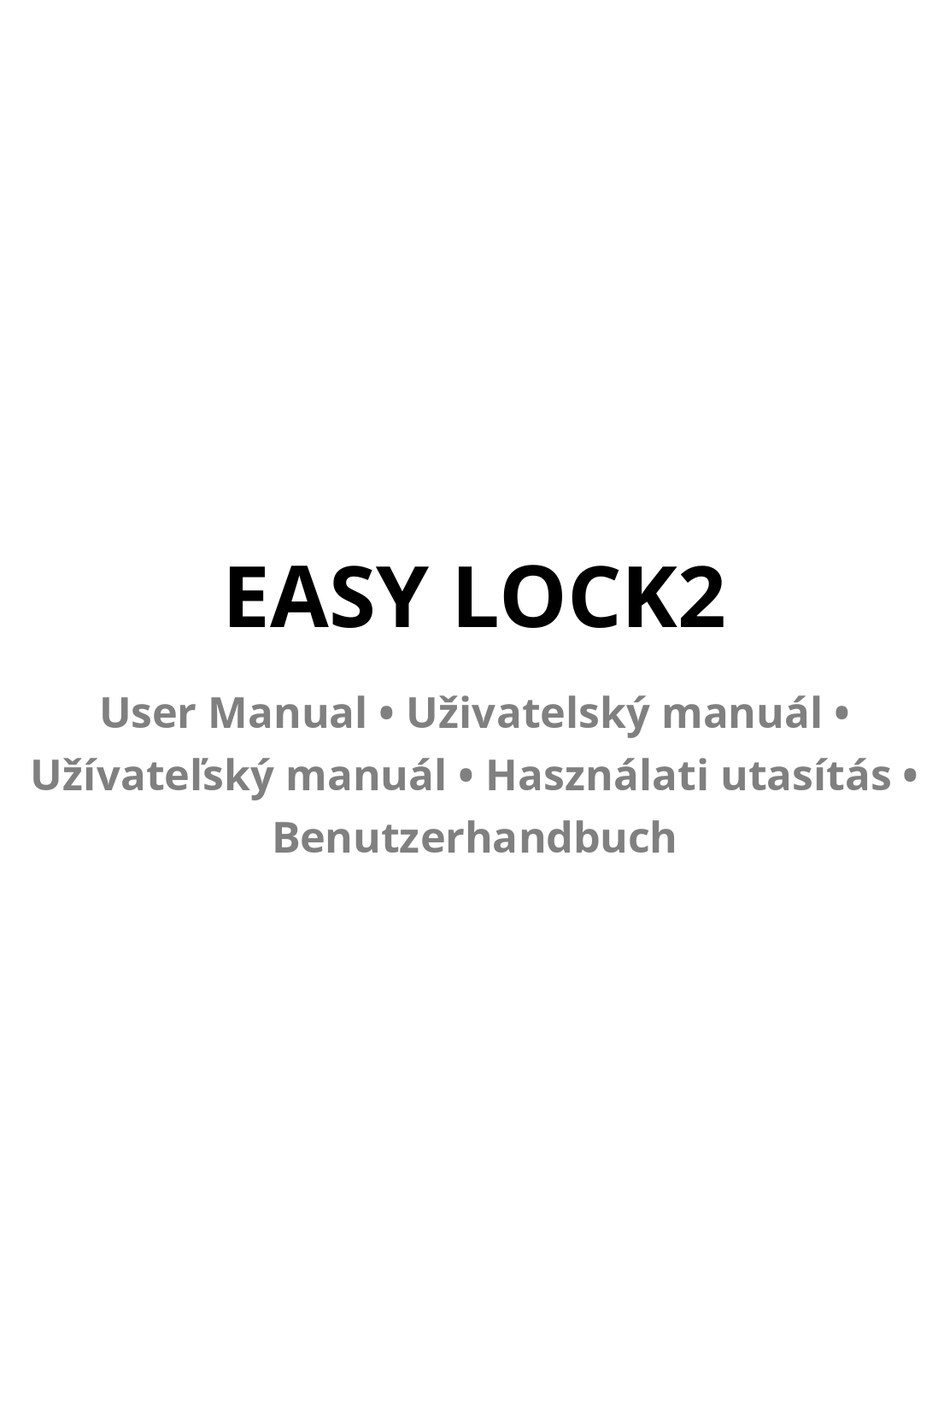 ZEAPON EASY LOCK2 USER MANUAL Pdf Download | ManualsLib